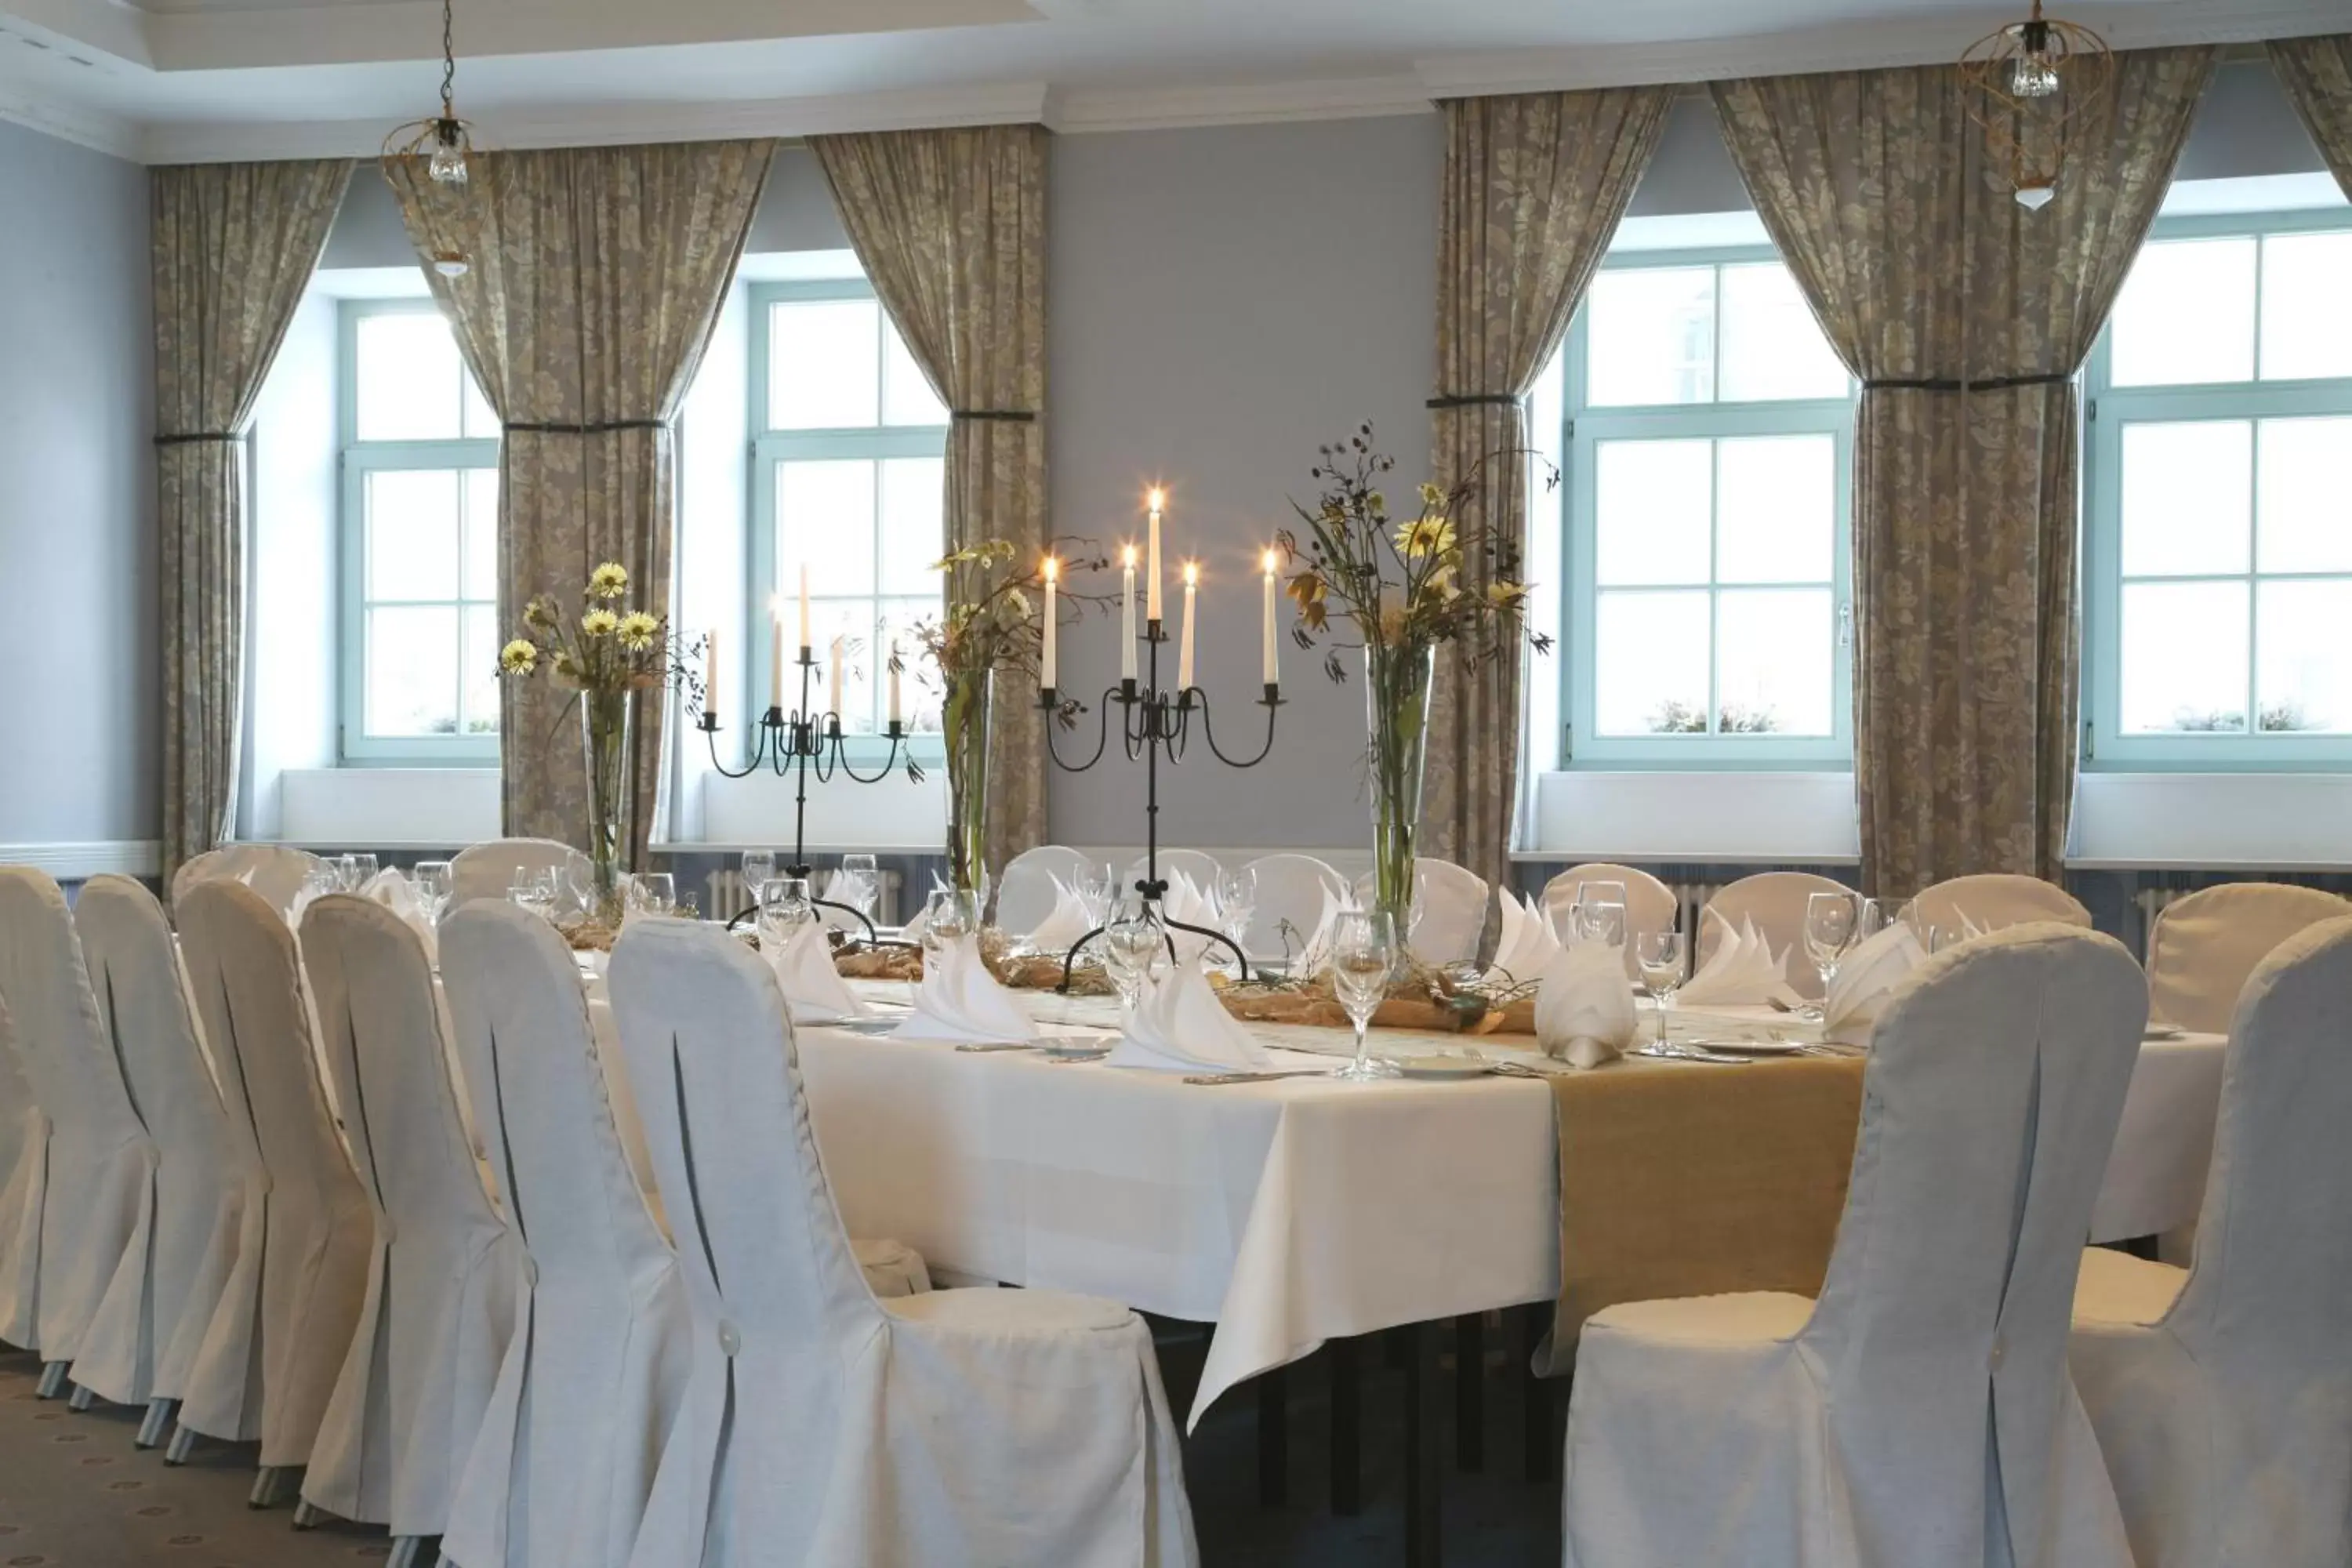 Restaurant/places to eat, Banquet Facilities in Schloss Hotel Dresden Pillnitz